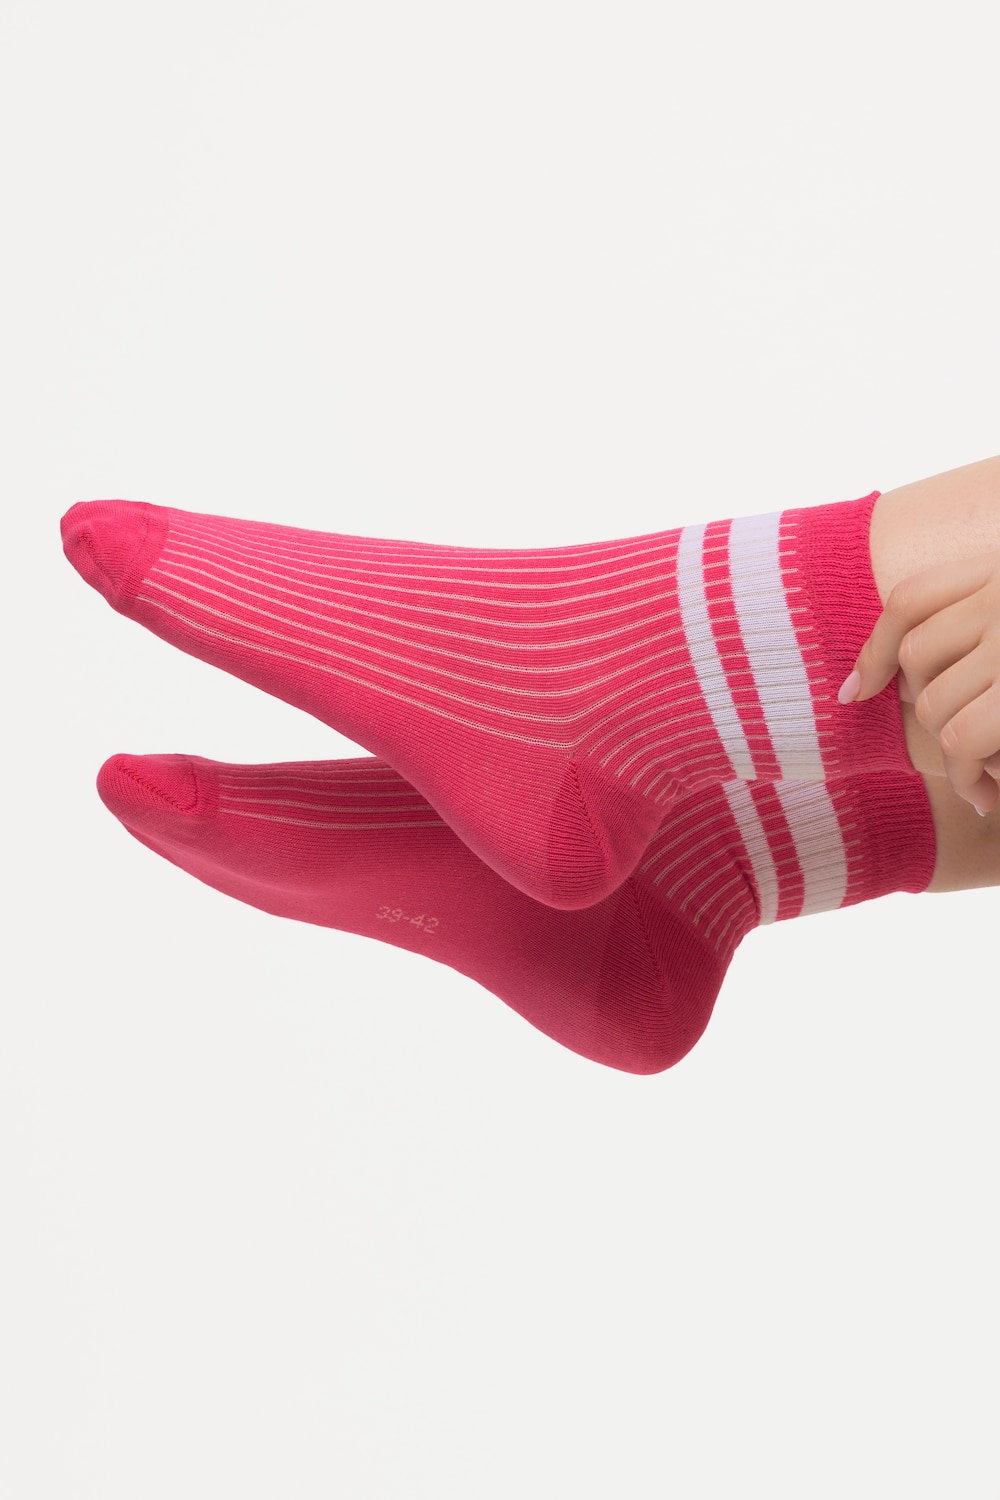 Grote Maten korte sokken, Dames, roze, Maat: 35-38, Katoen/Synthetische vezels, Ulla Popken